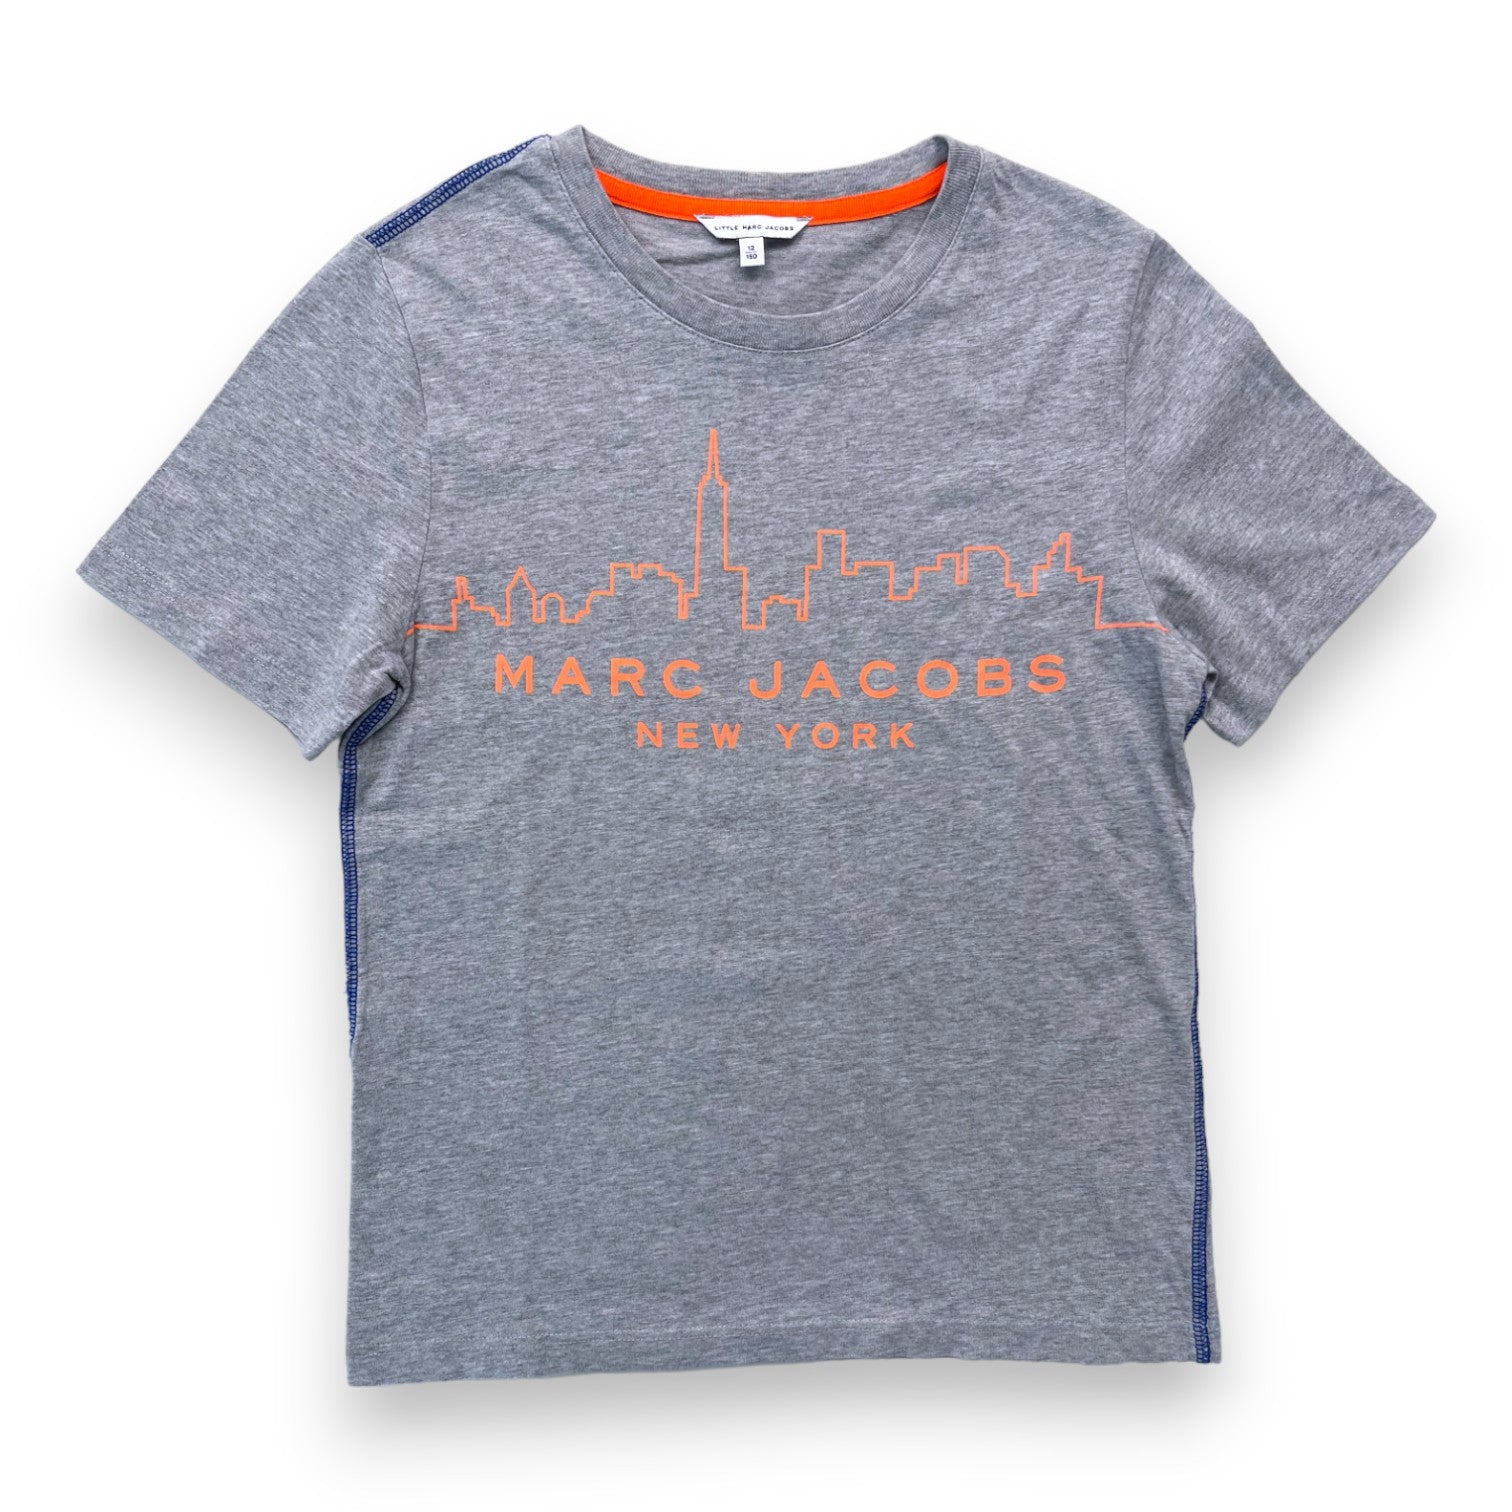 MARC JACOBS - T shirt gris à imprimé orange - 12 ans